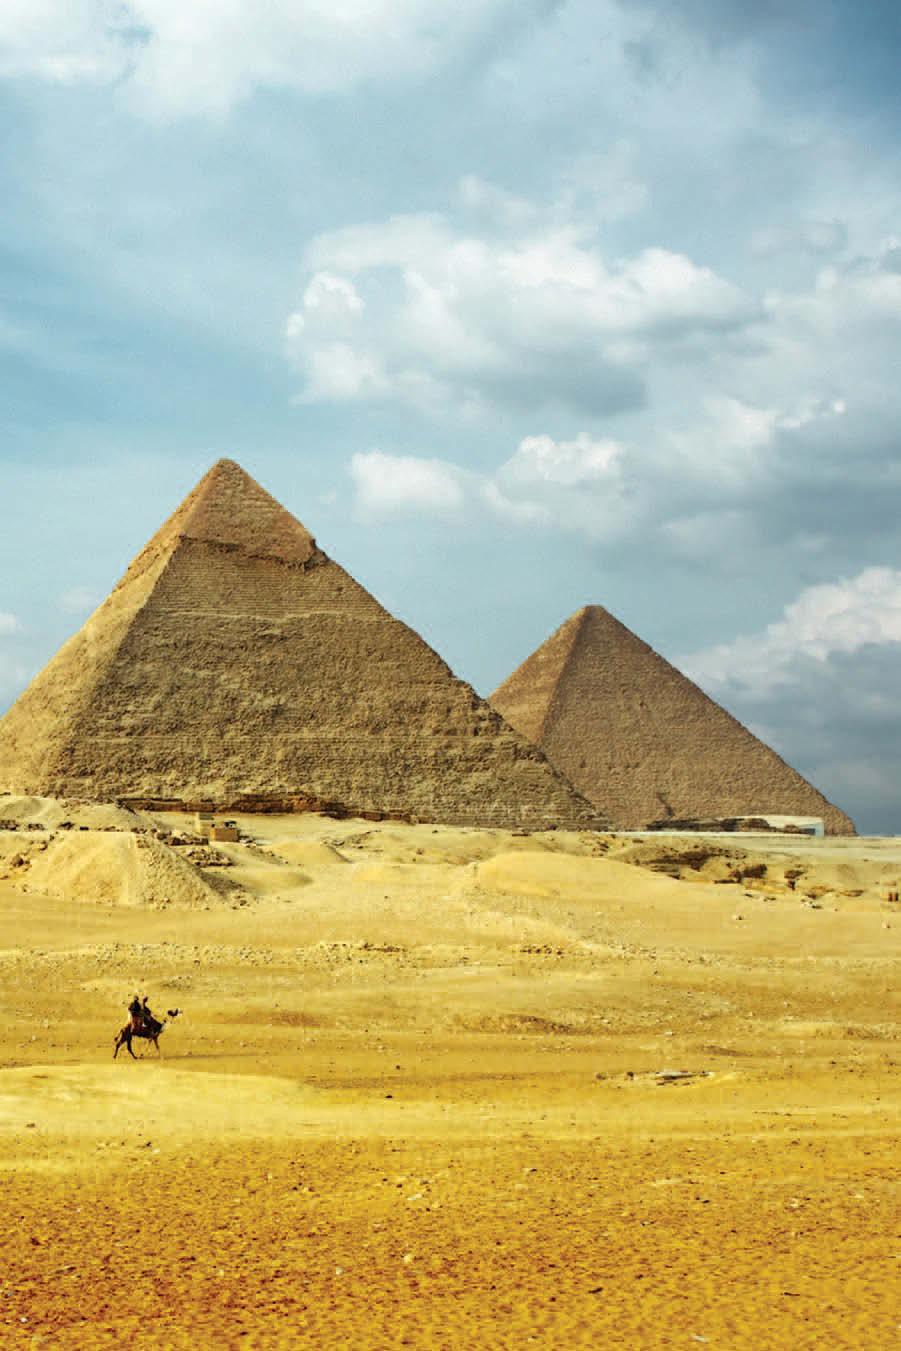 The Pyramids at Giza.